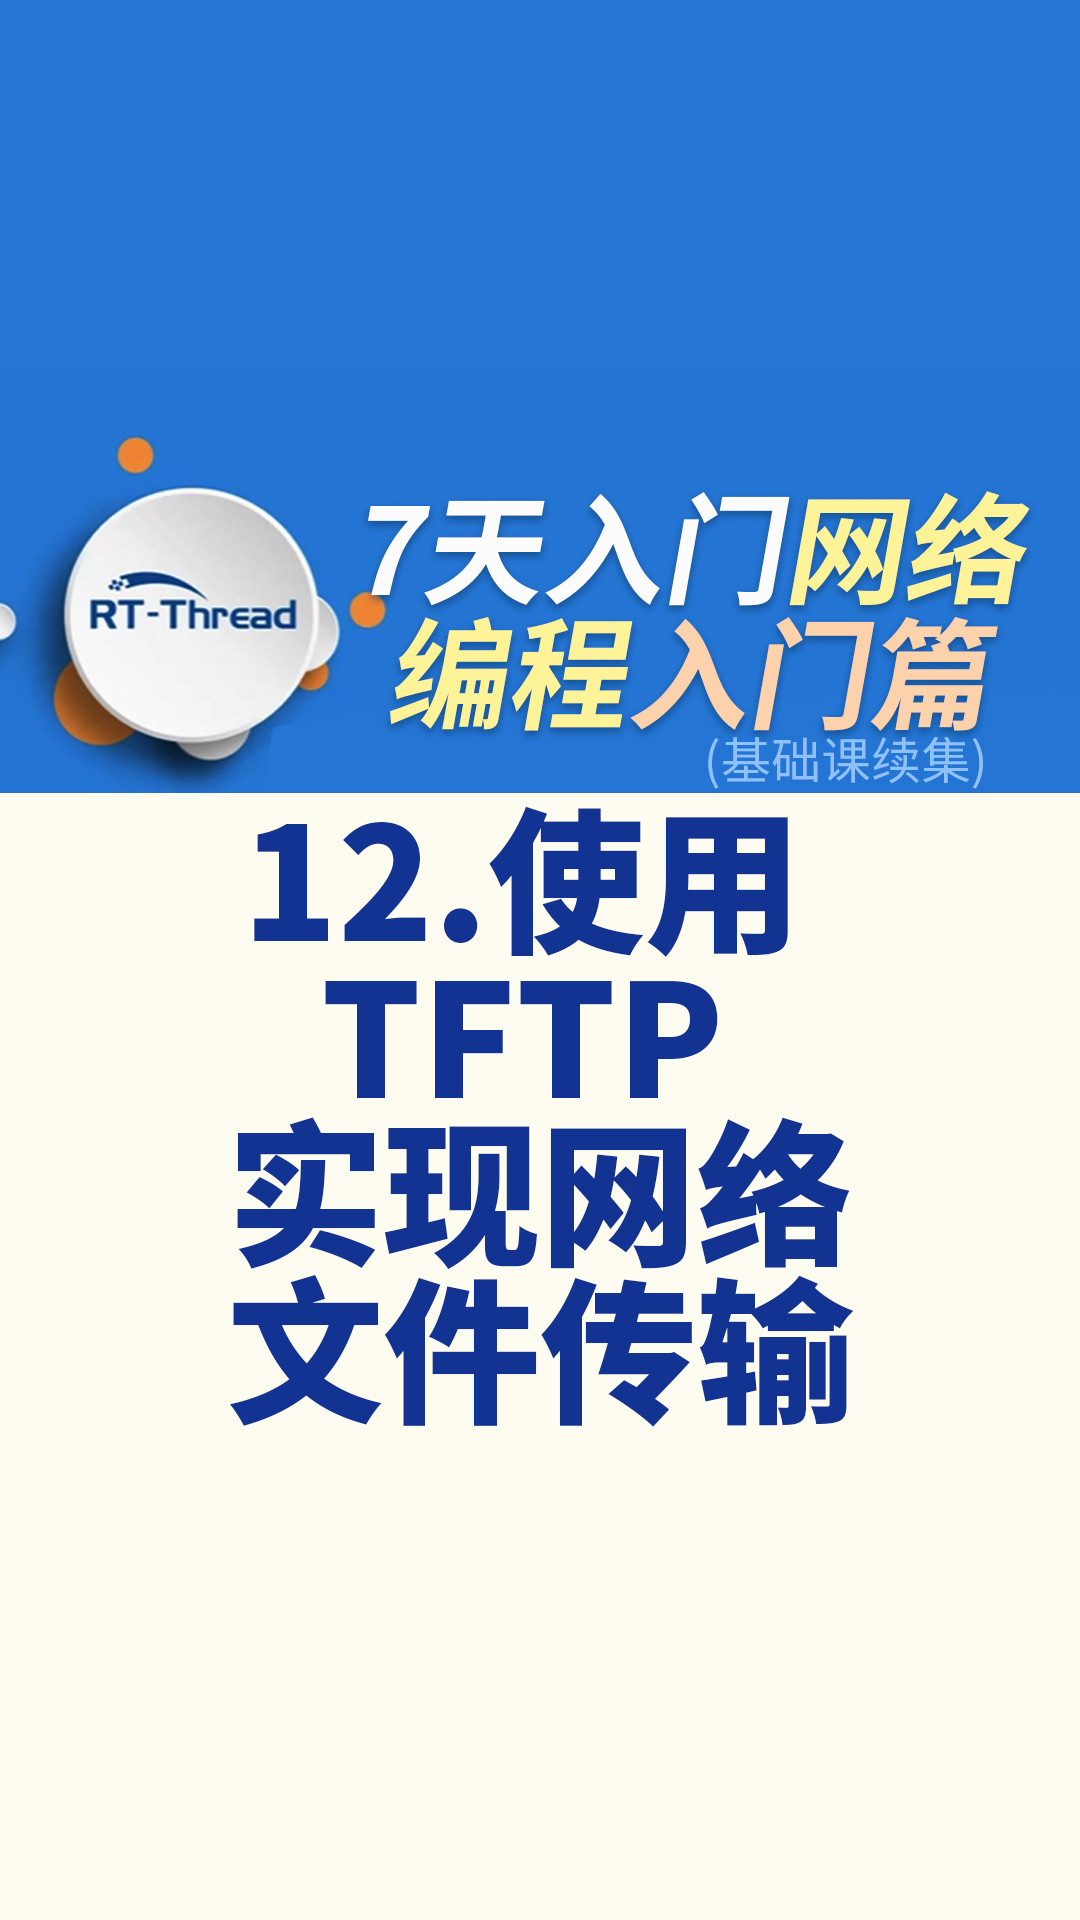 7天入门网络编程 - 12.使用 TFTP 实现网络文件传输   #网络编程 